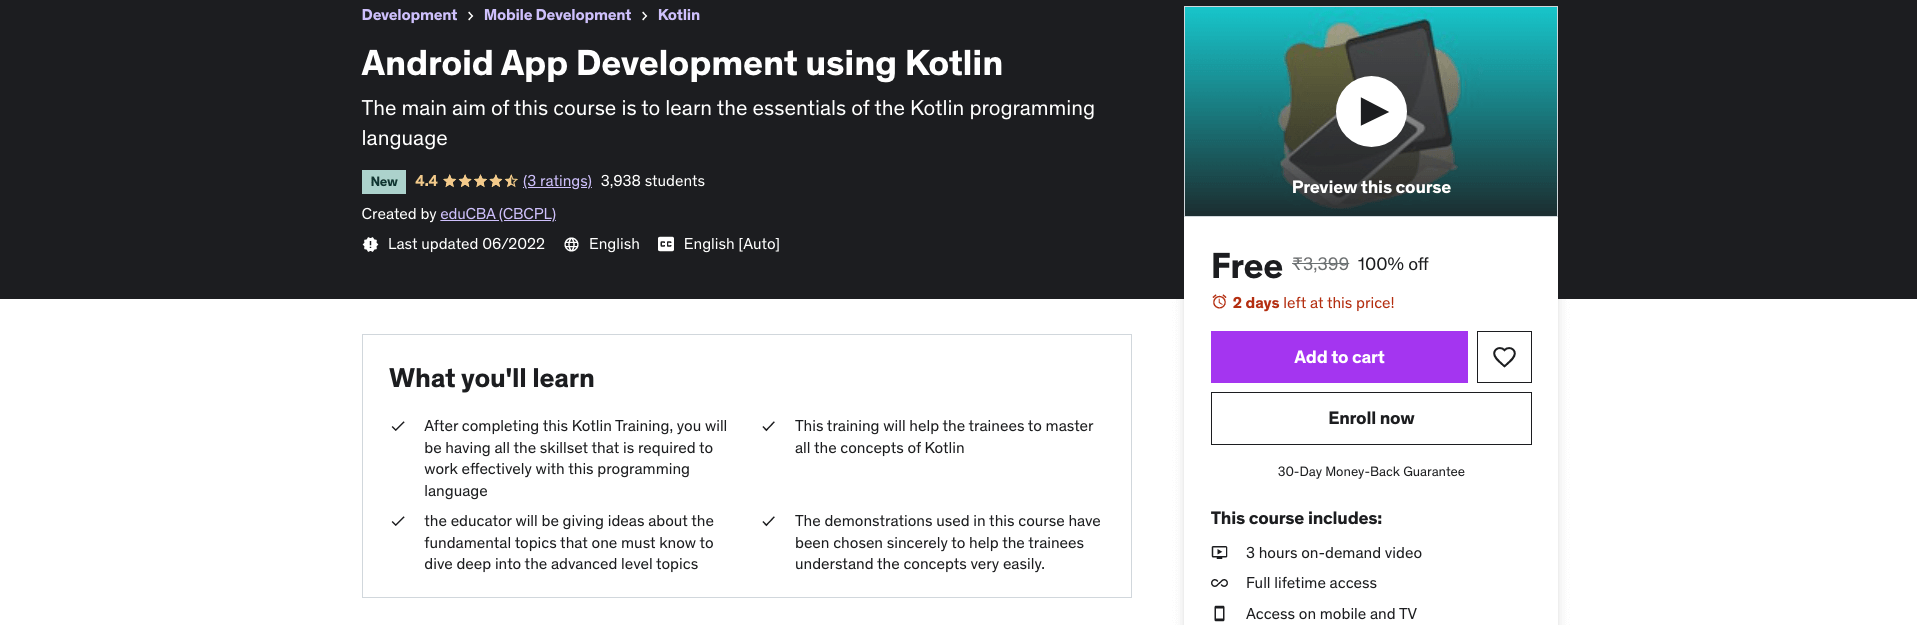 Android App Development using Kotlin